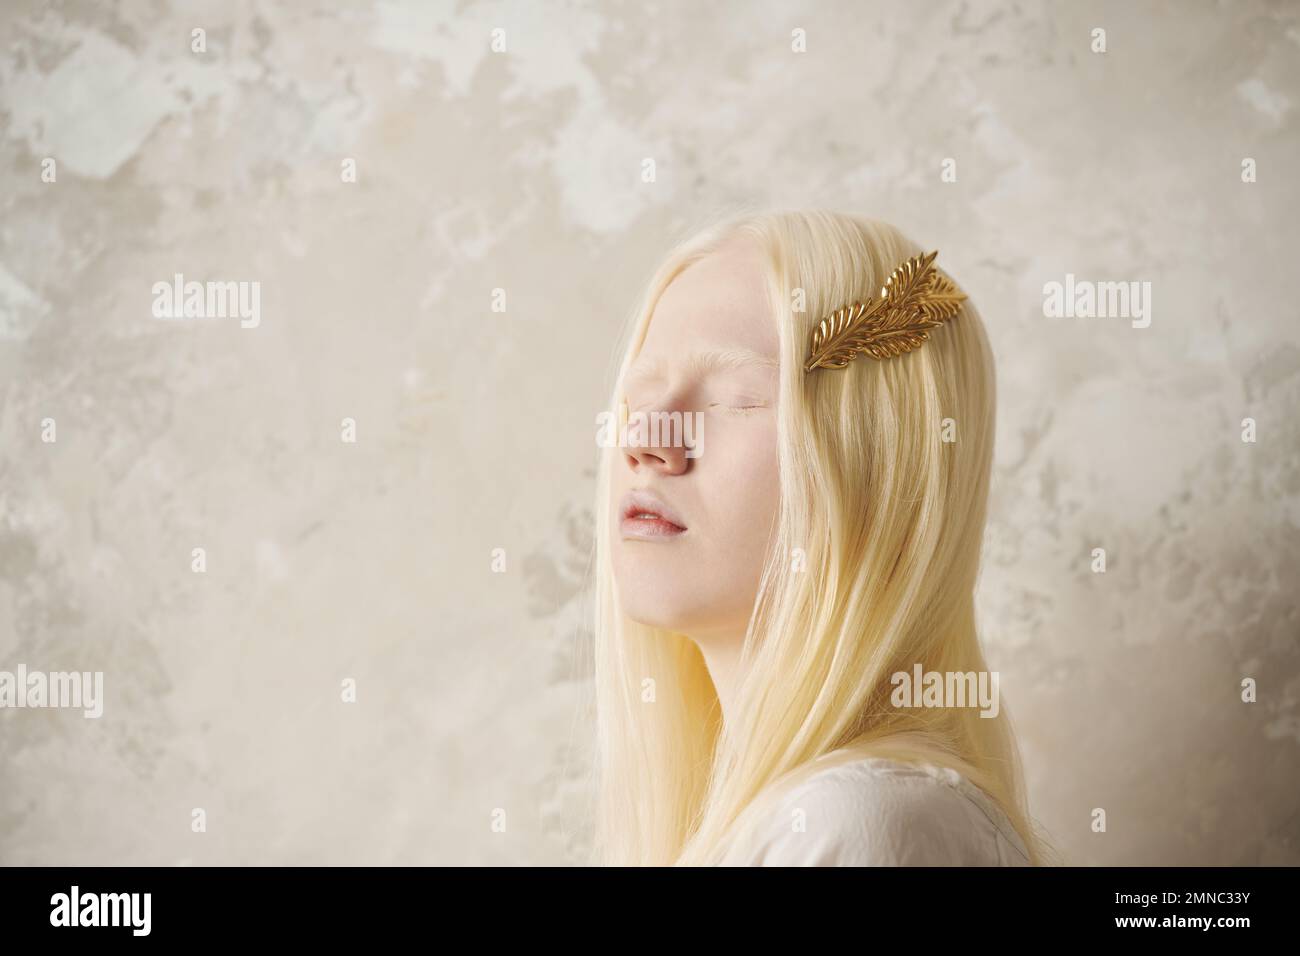 Jeune belle albino femme avec une épingle à cheveux dorée dans de longs cheveux blonds en gardant les yeux fermés tout en se tenant contre un mur de marbre Banque D'Images